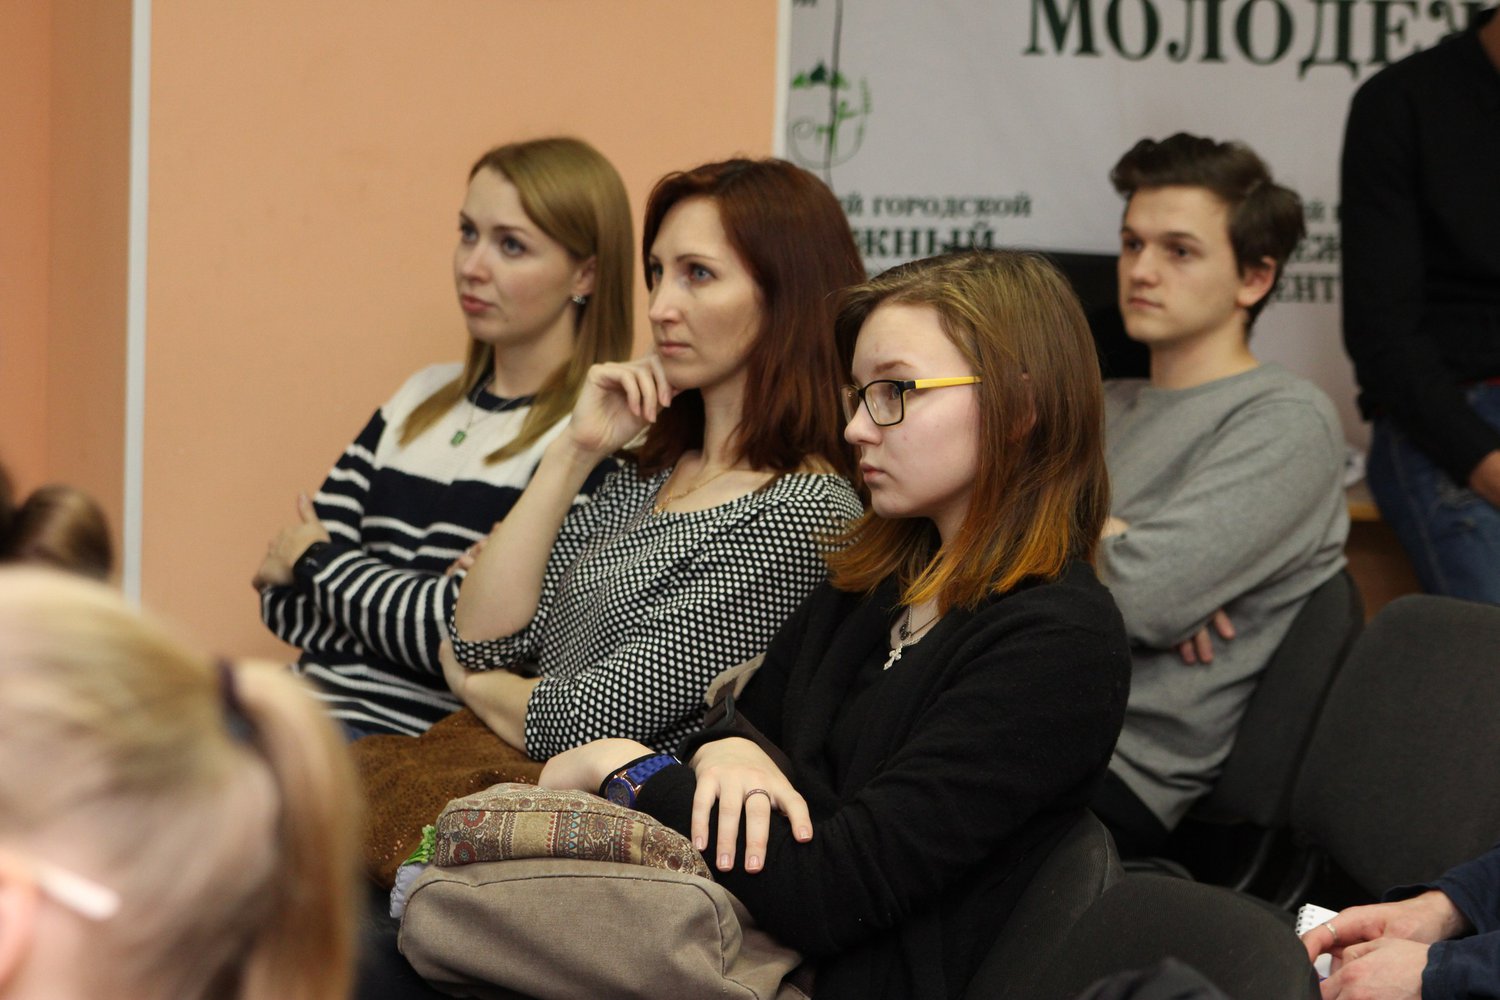 Три образовательных встречи в рамках недели мастер-классов состоялись в Молодежном центре